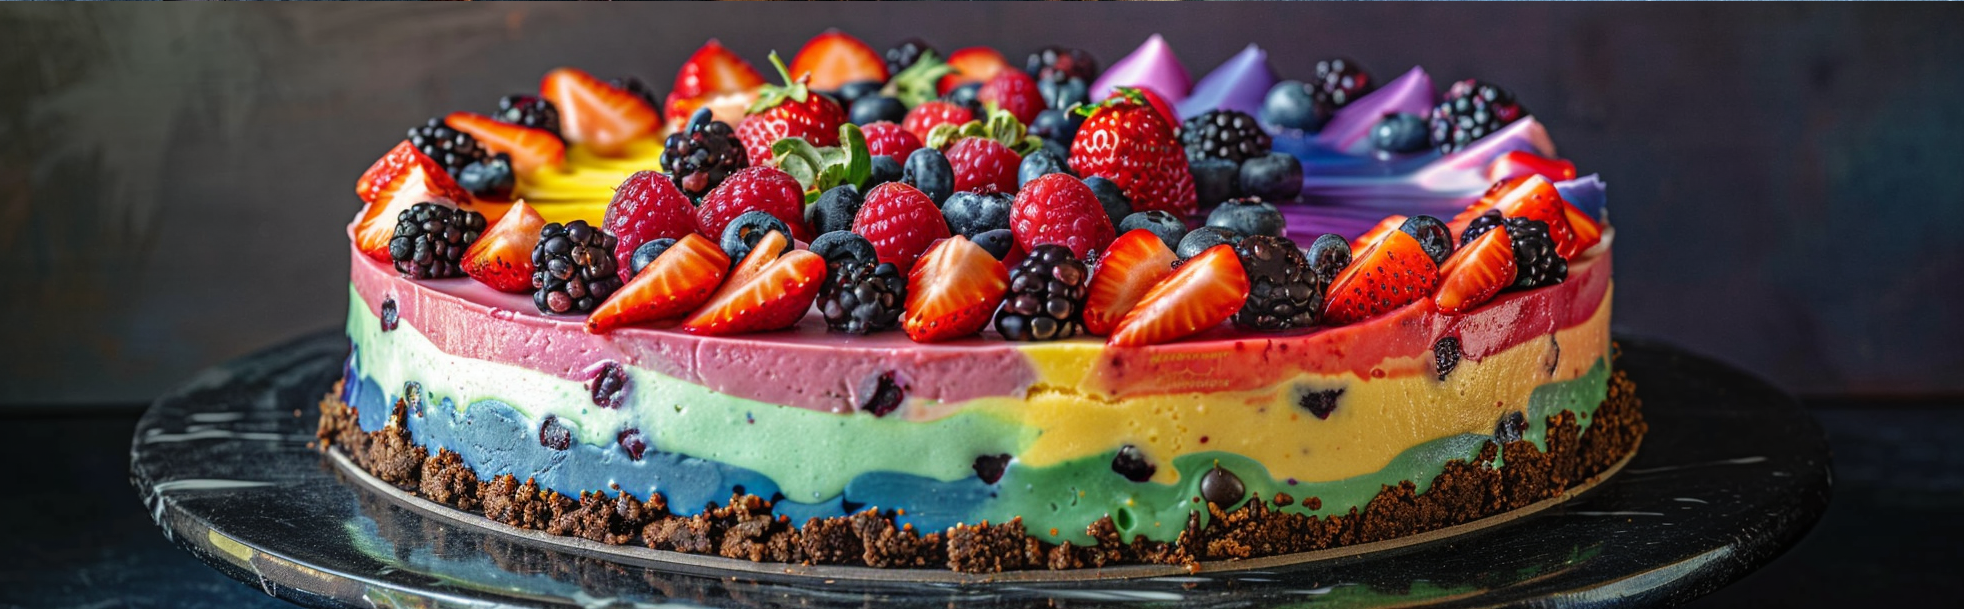 rainbowberrycheesecake-rainbowcheesecake-1400×432